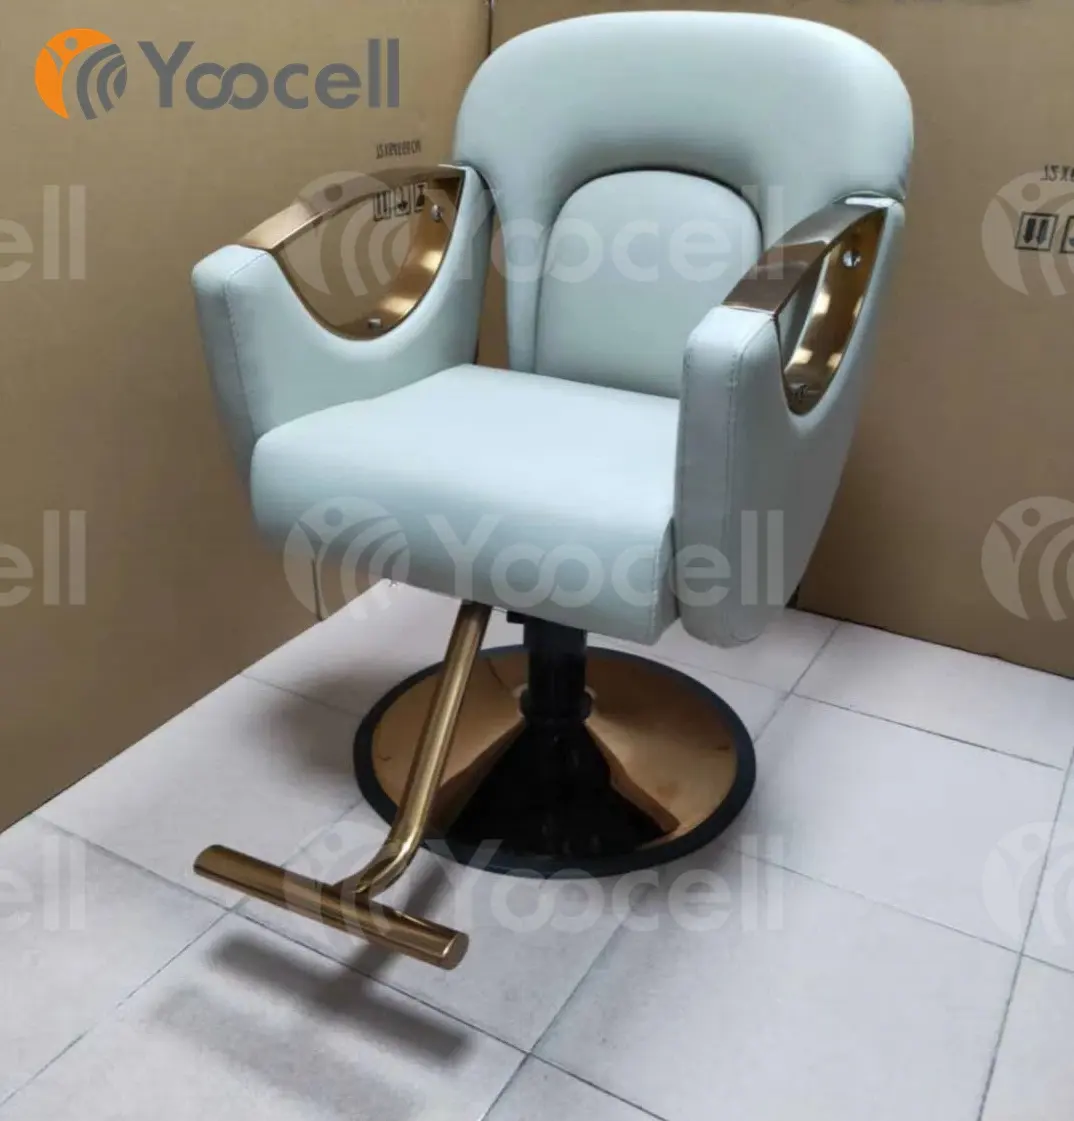 Yoocell ब्लू में reclining बाल काटने सैलून कुर्सी मोटी हाइड्रोलिक गोल्ड दौर आधार के लिए ब्यूटी सैलून श्रृंगार